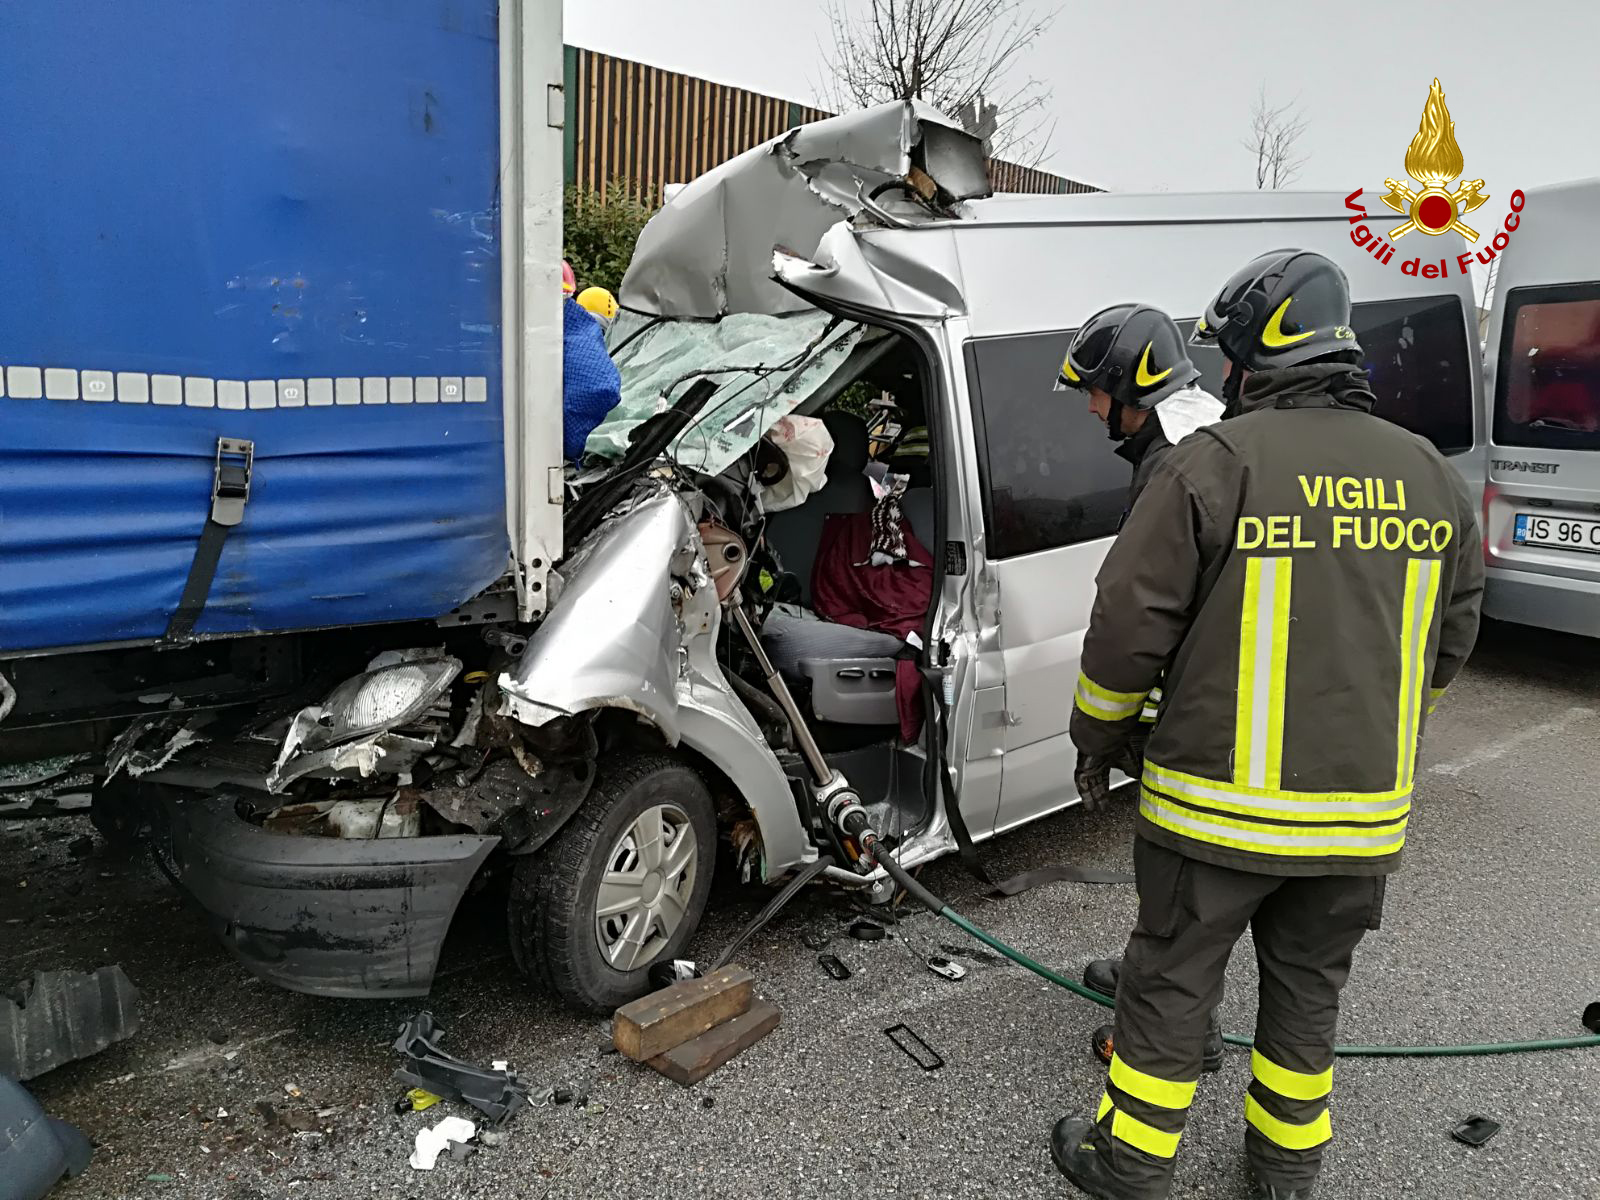 Brutto incidente in mattinata tra un furgone e un mezzo pesante in sosta, all’interno dell’area di servizio di Arino ovest, lungo l’A4. 